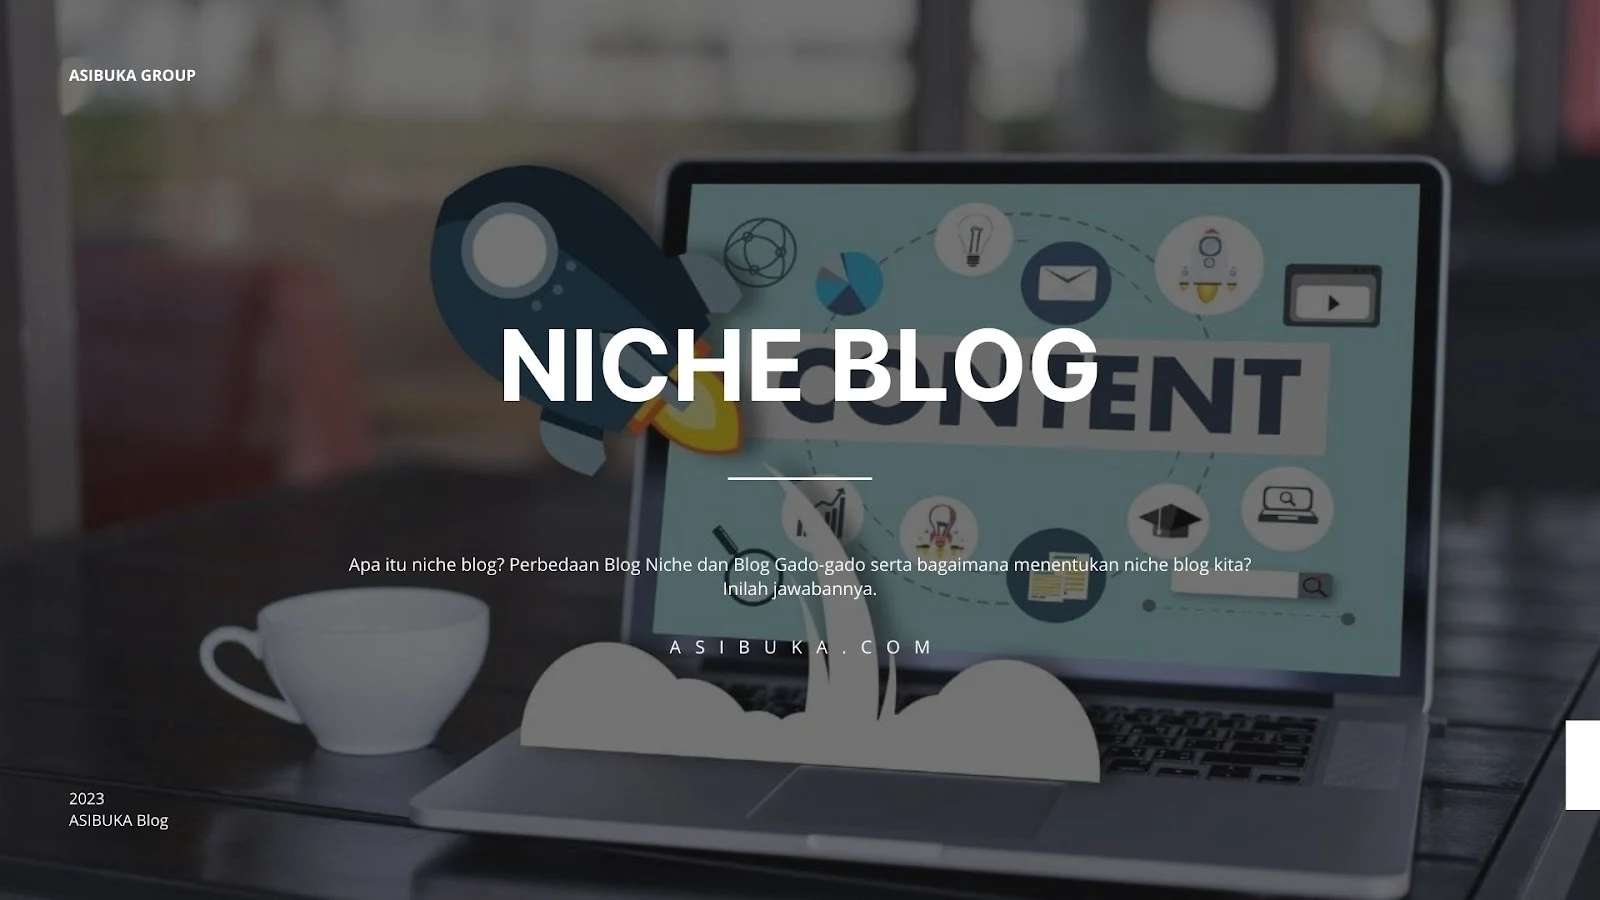 Niche Blog: Definisi, Perbedaan Niche dan Gado-gado, Kelebihan dan Kekurangan